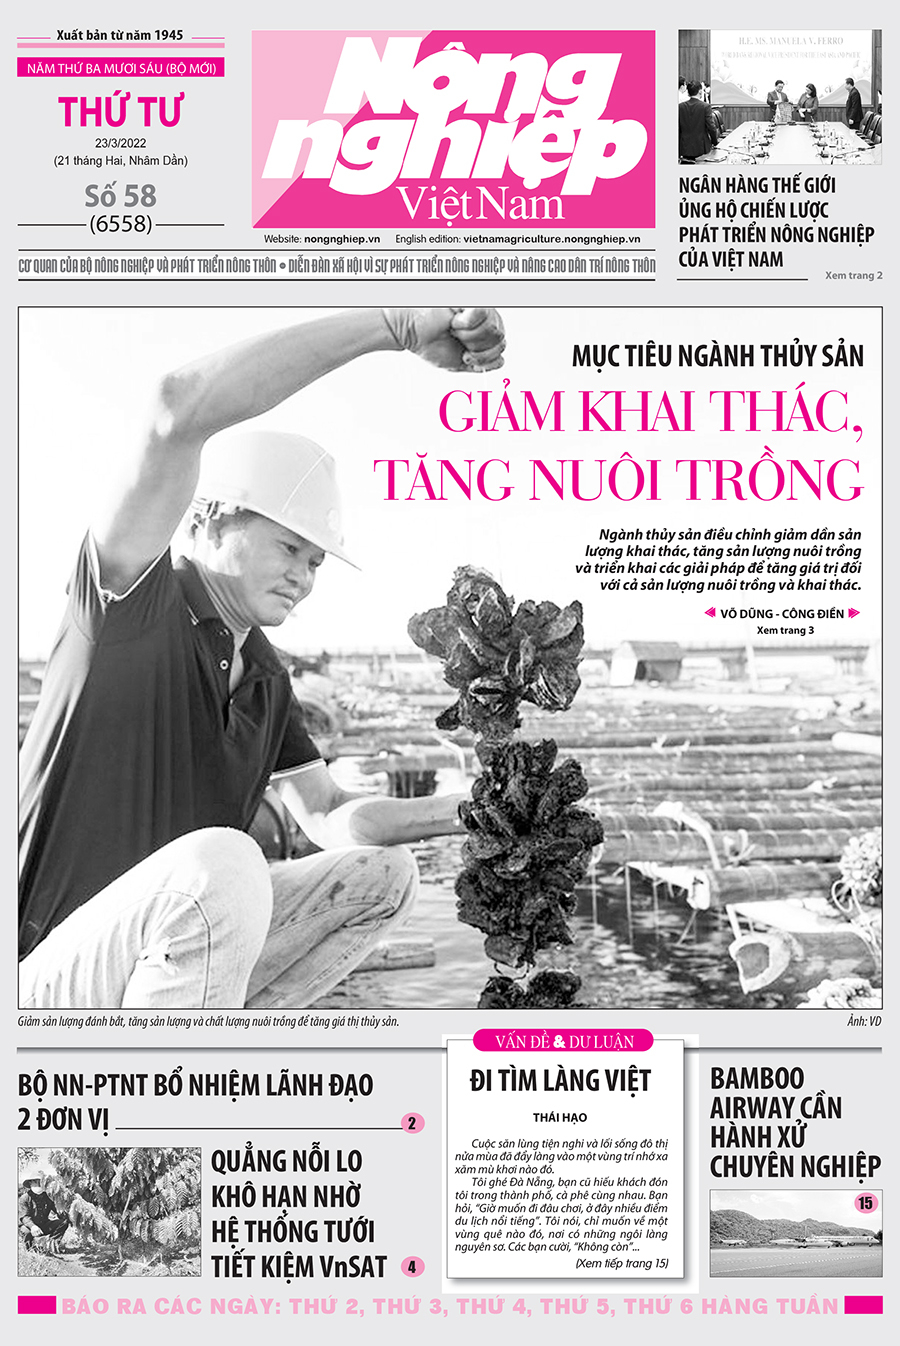 Tổng hợp tin tức báo giấy trên Báo Nông nghiệp Việt Nam số 58 ra ngày 23/3/2022